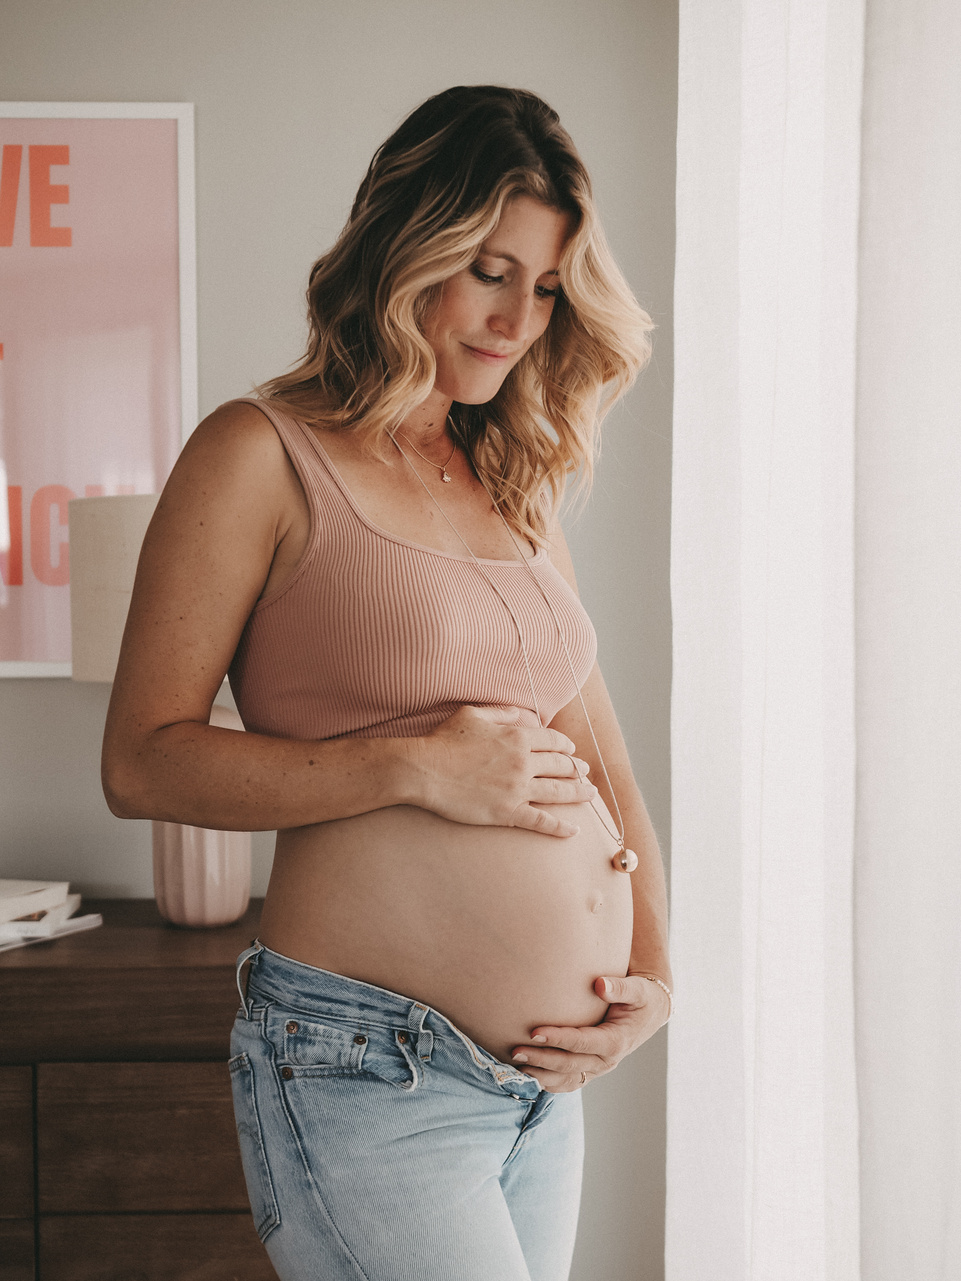 Photo de grossesse, maternité, femme enceinte qui regarde son ventre.